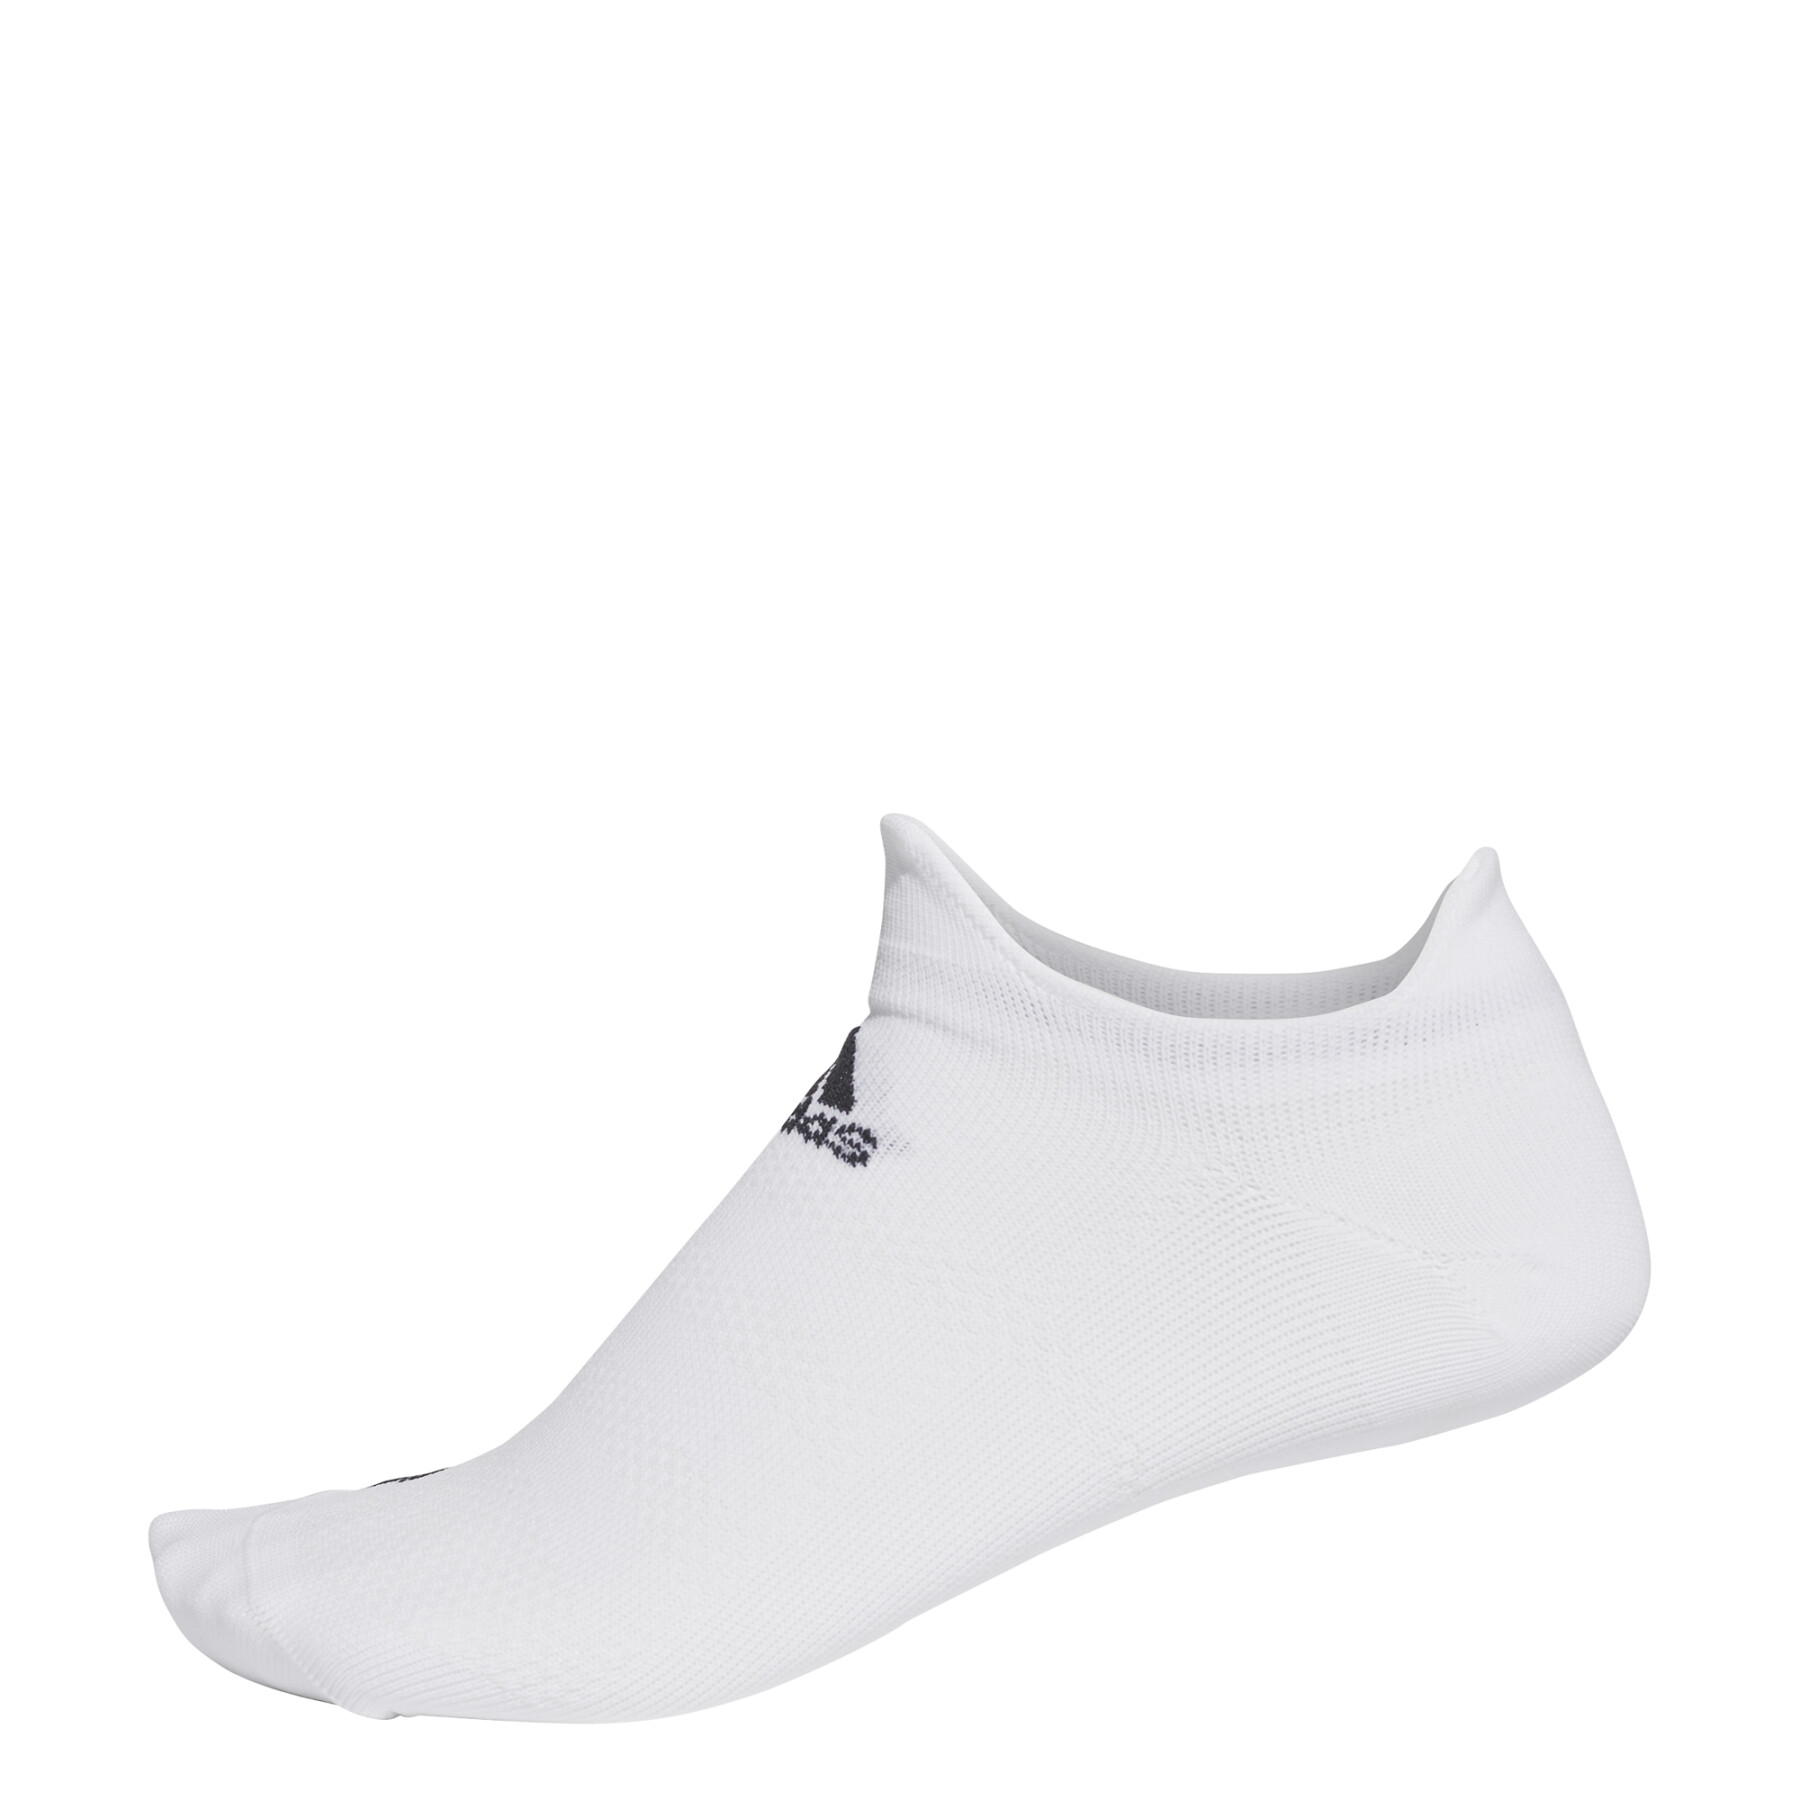 Socks adidas invisibles Alphaskin Ultralight